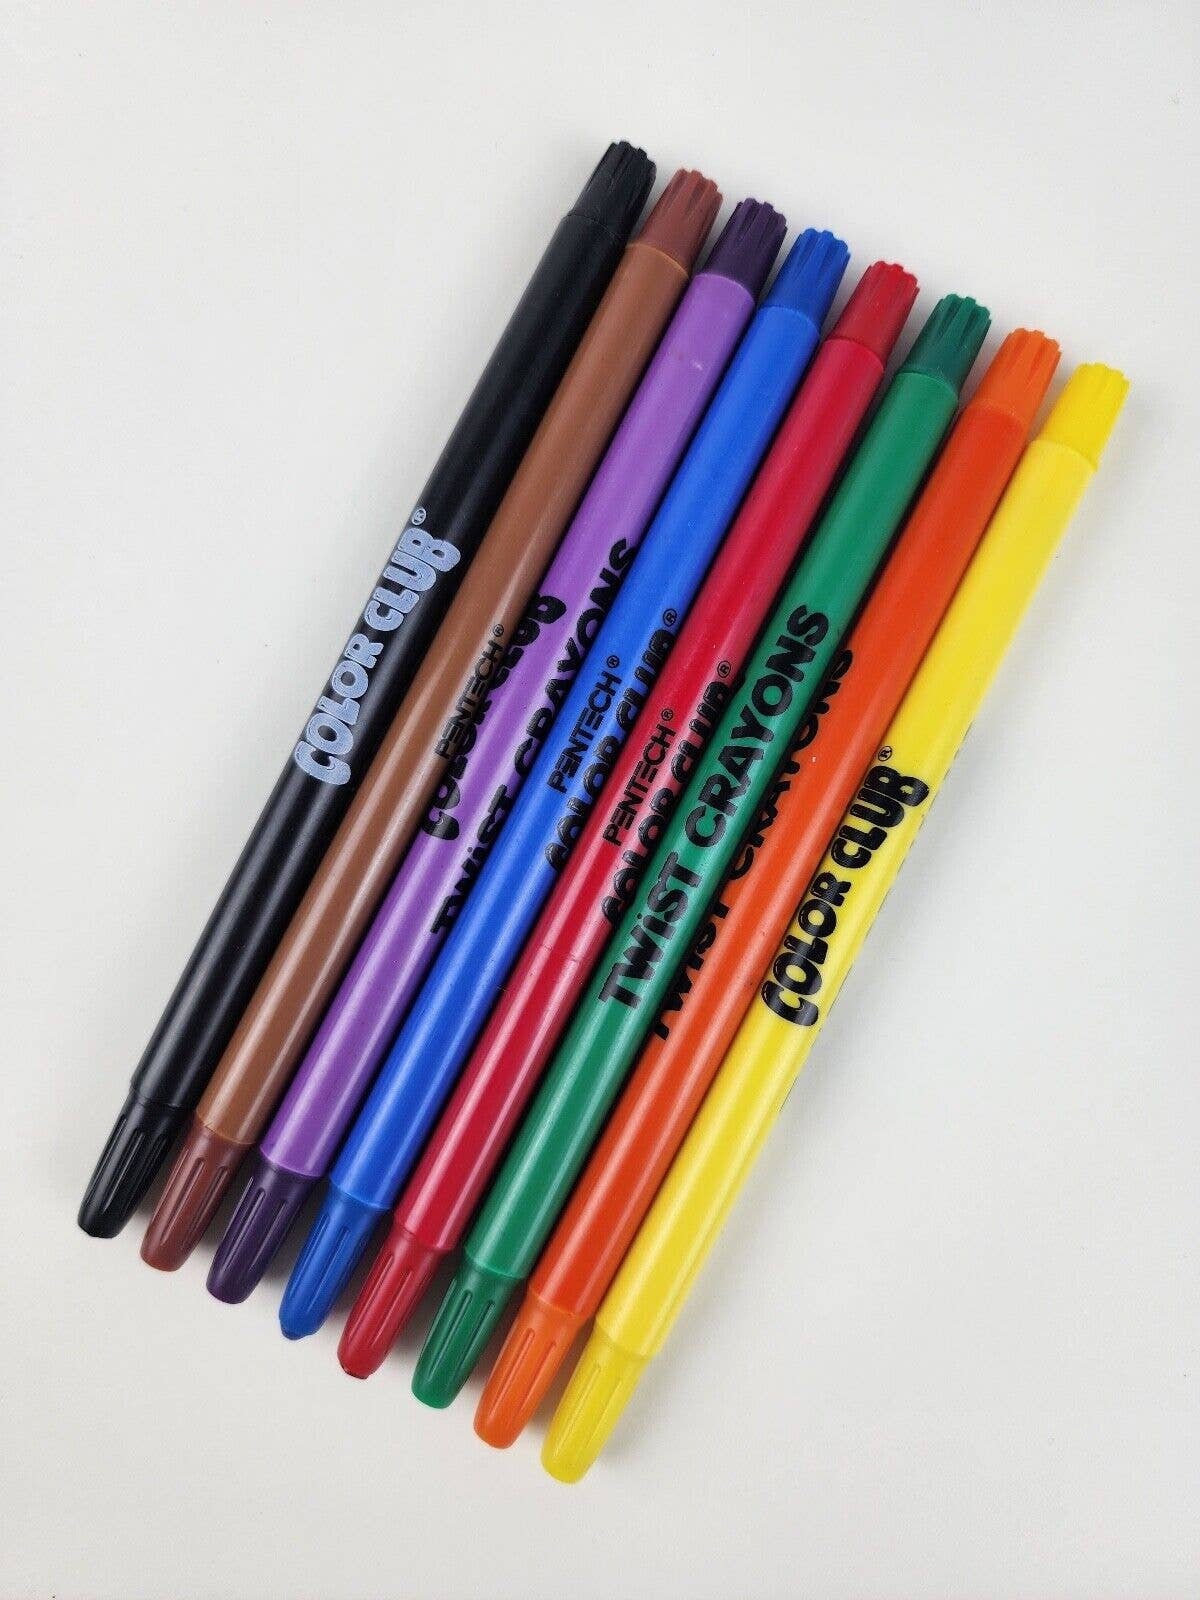 Empire Vintage Colored Wax Pencil Crayons Made in Korea Twist Plastic Crayon